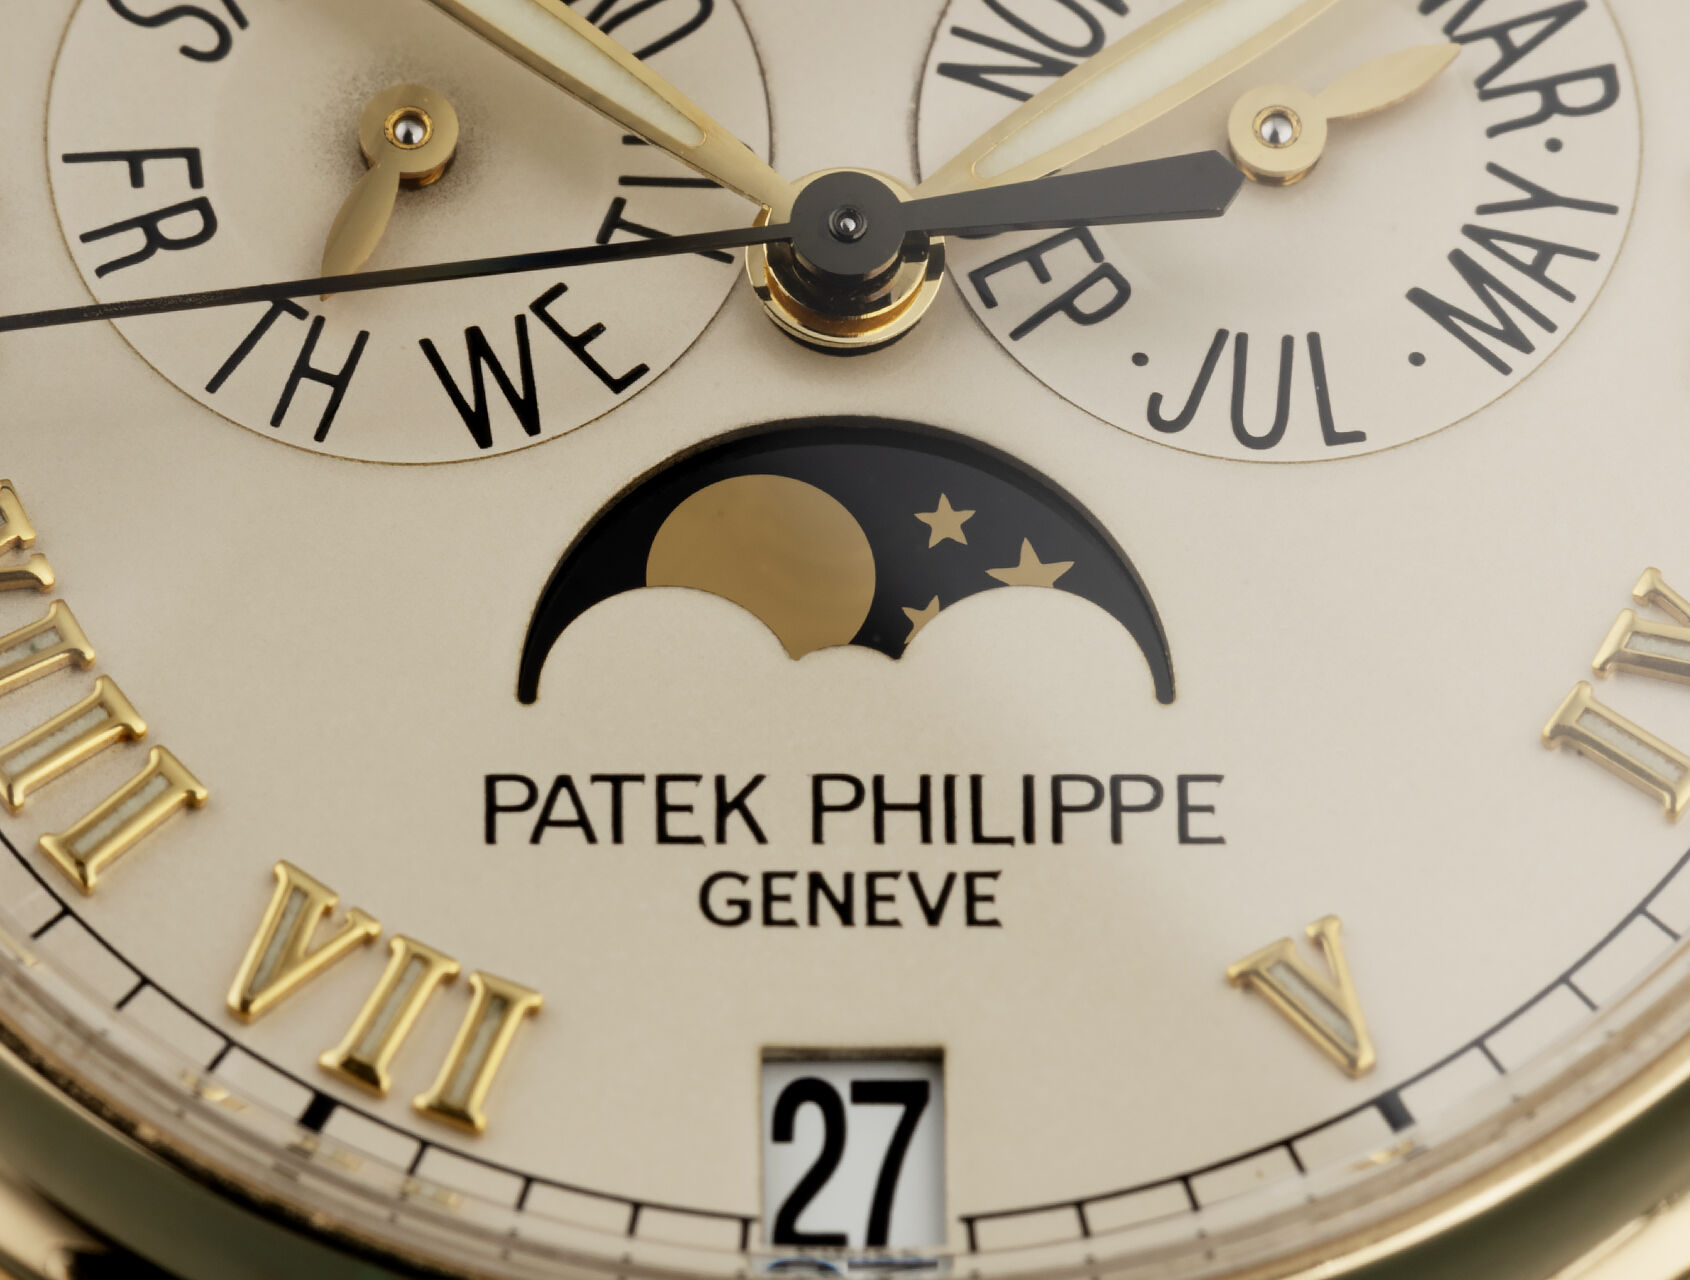 tham chiếu 5036/1J-001 |  5036/1J - Biến chứng |  Lịch hàng năm của Patek Philippe